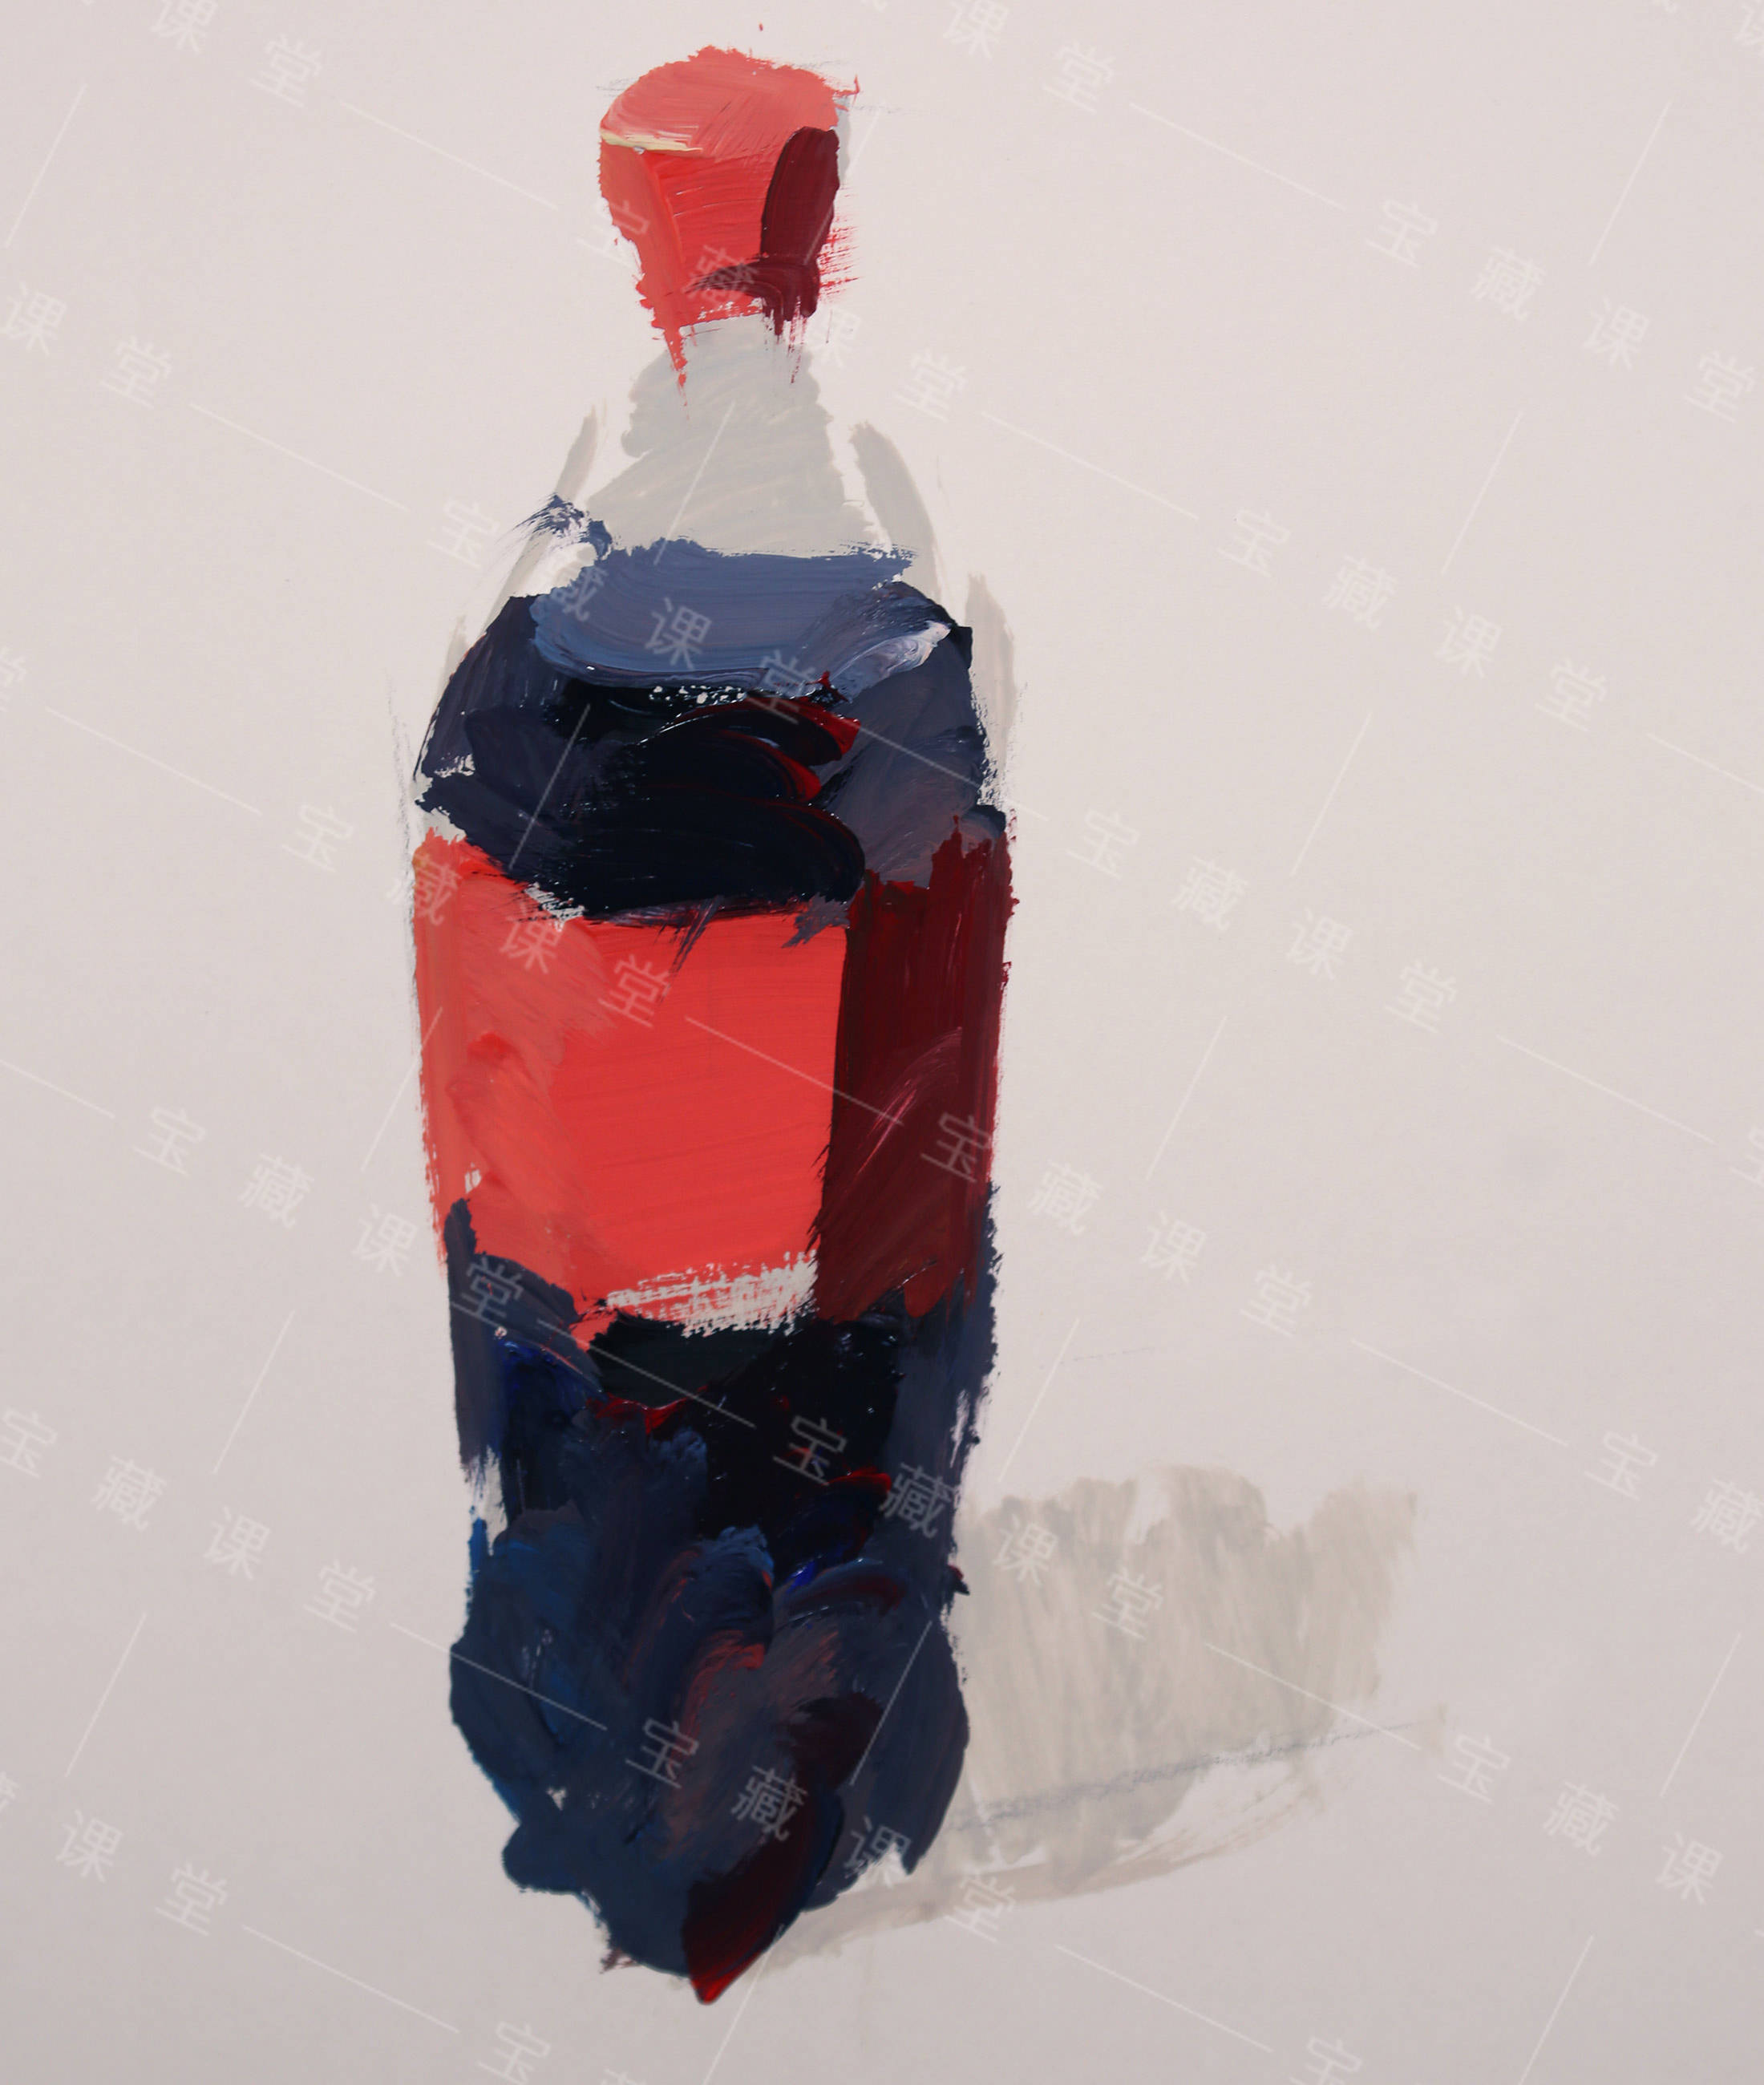 色彩静物常见单体—可乐瓶课程训练步骤图分享 宝藏美术网校_瓶子